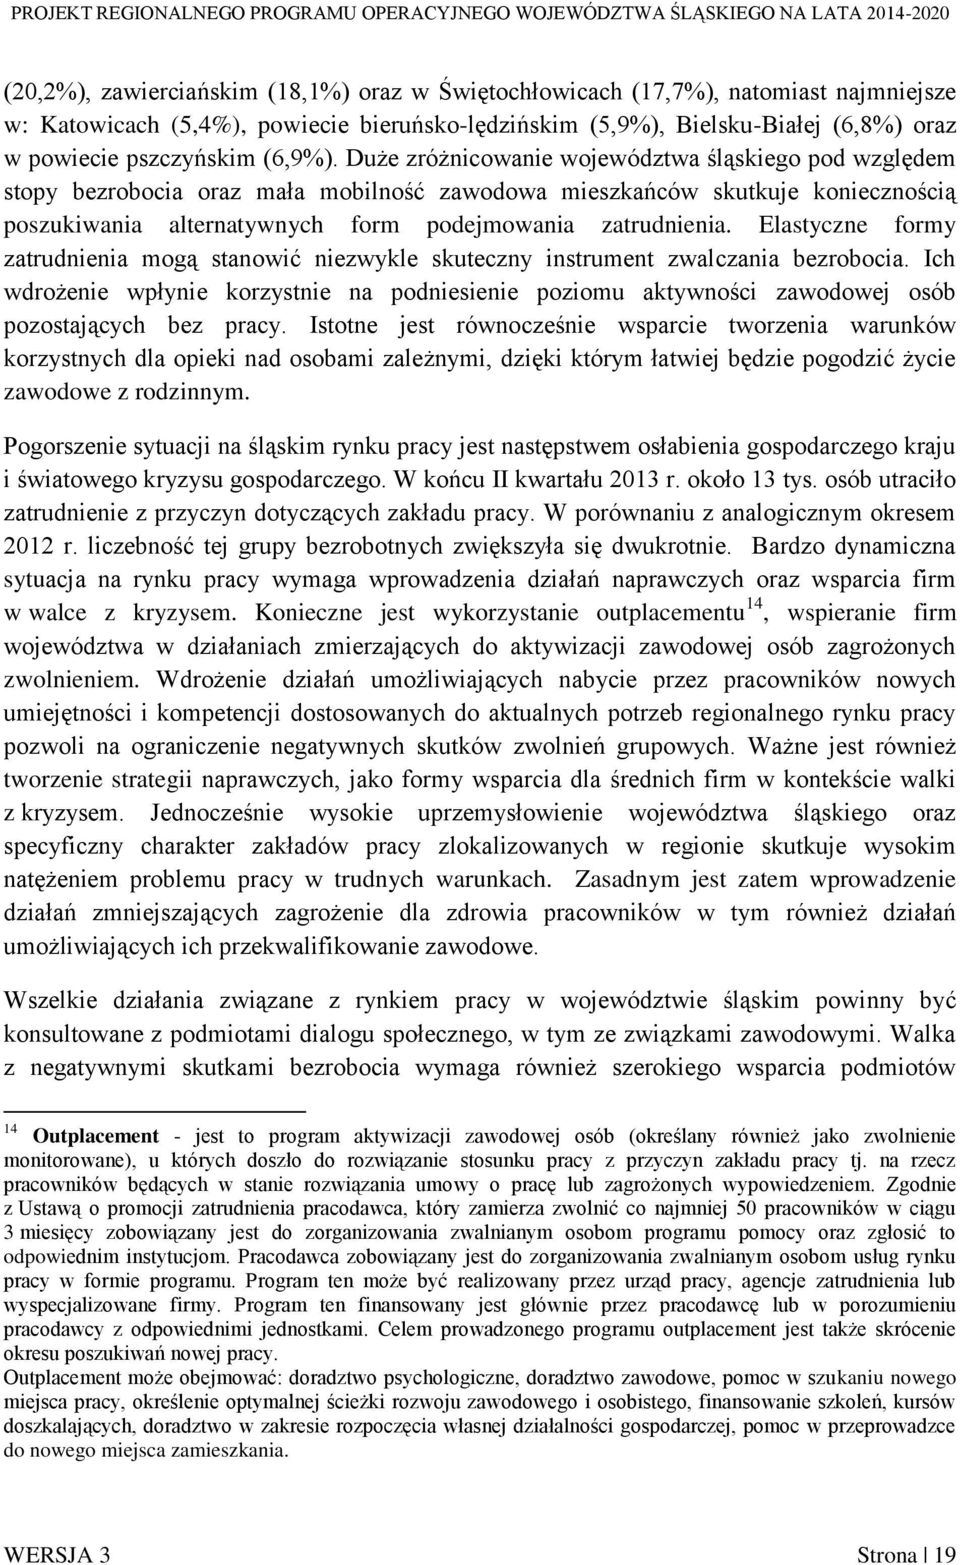 Duże zróżnicowanie województwa śląskiego pod względem stopy bezrobocia oraz mała mobilność zawodowa mieszkańców skutkuje koniecznością poszukiwania alternatywnych form podejmowania zatrudnienia.